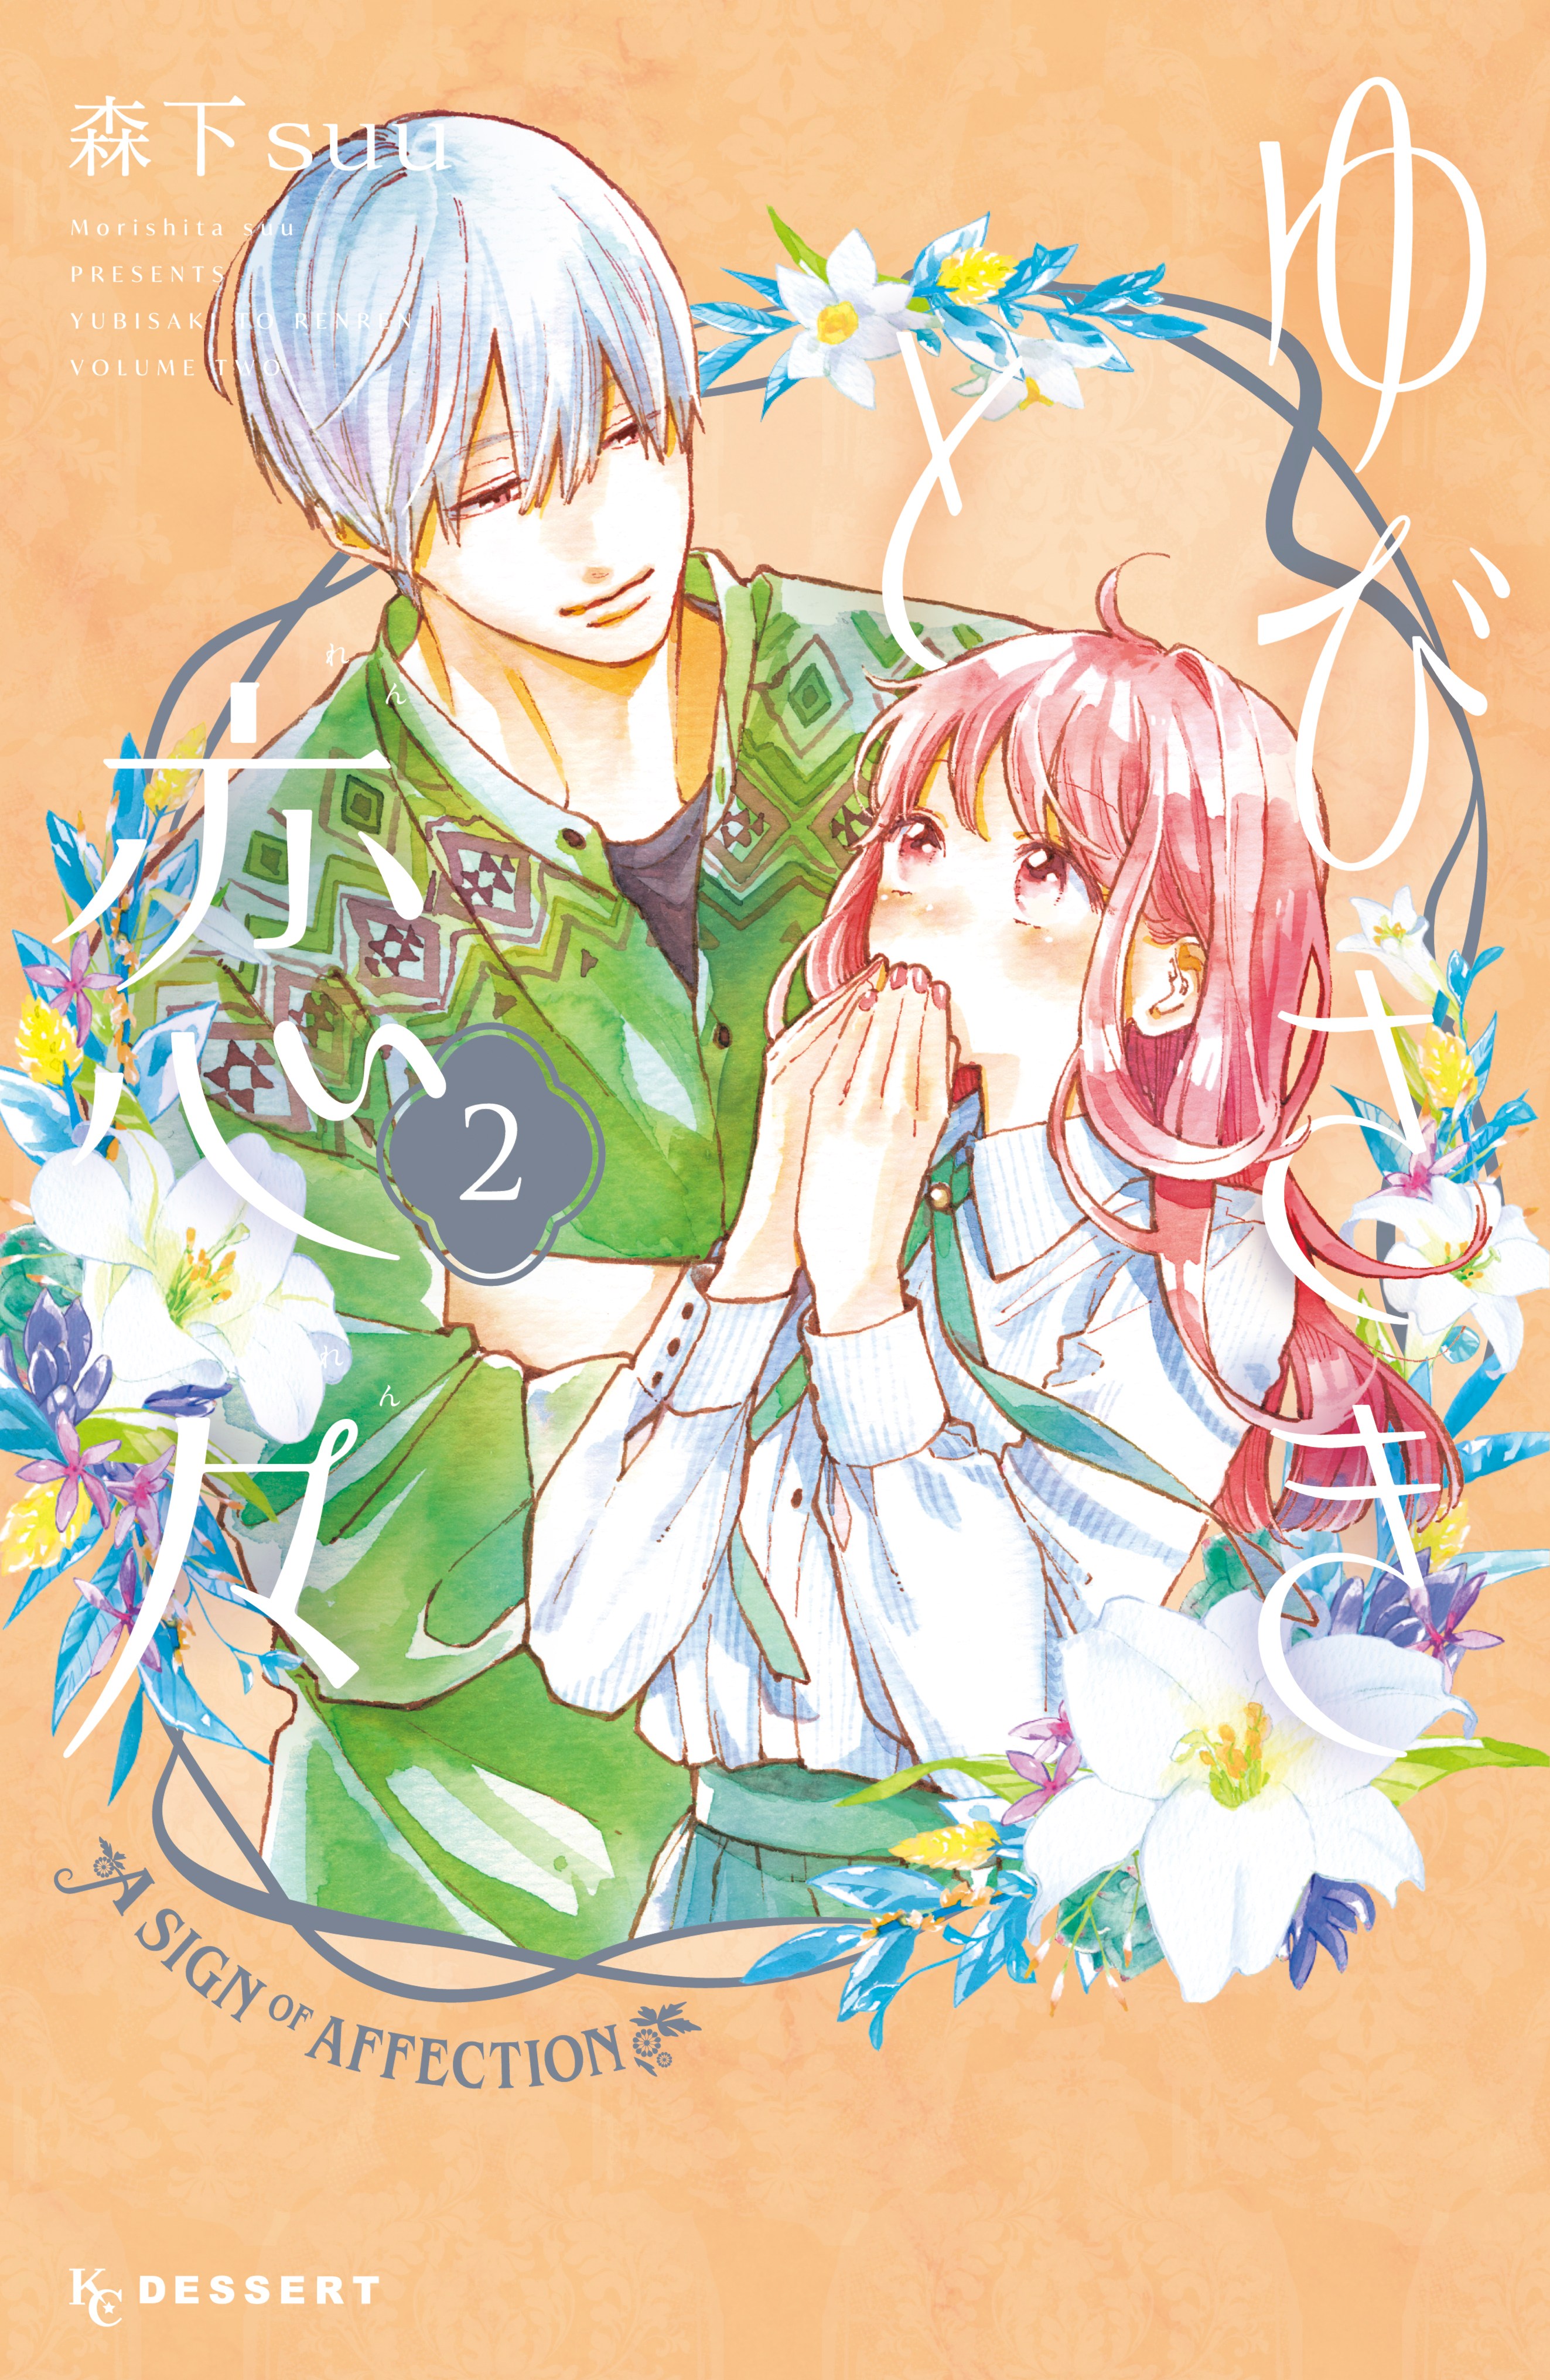 MangaRepublic on Twitter Physical Paperback Manga  Yubisaki to Renren  vol9 httpstcojKPsCB997G httpstcoRuqaFAS4zE  Twitter